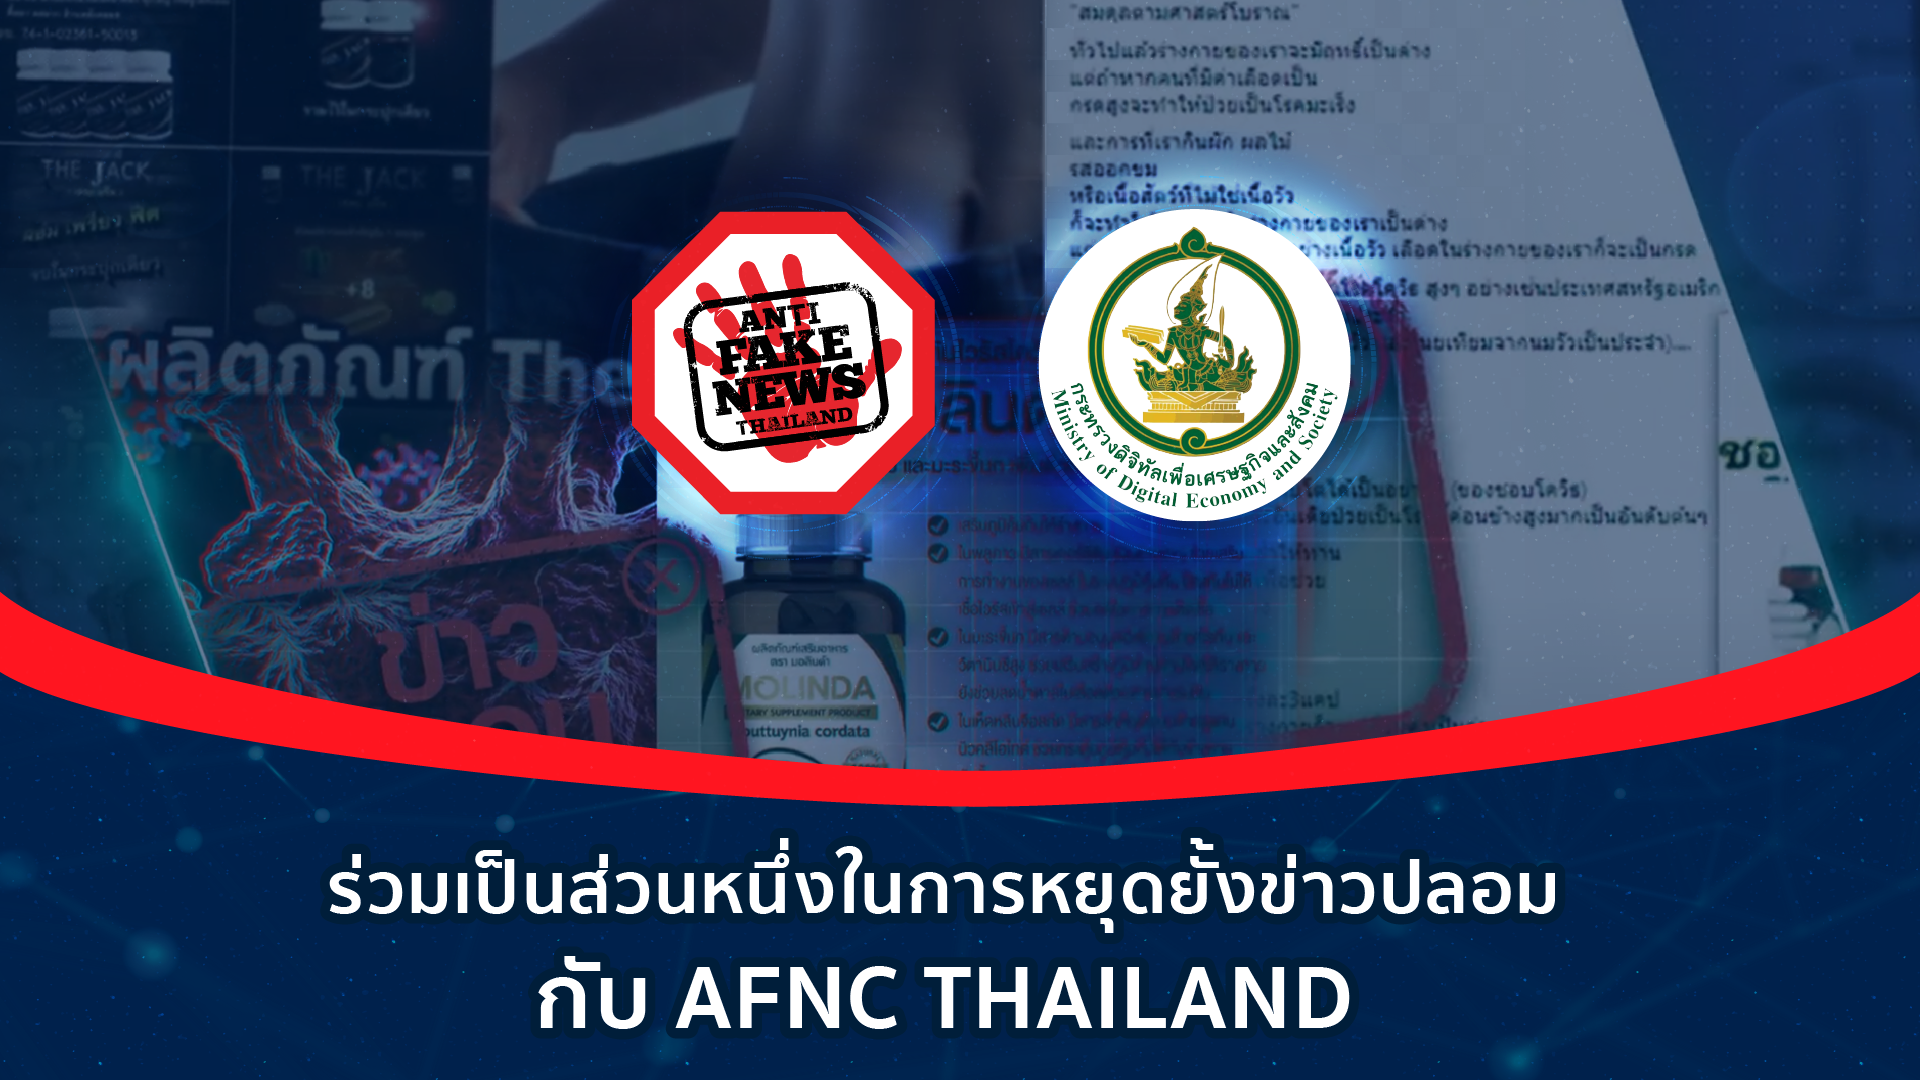 ep4 ร่วมเป็นส่วนหนึ่งในการหยุดยั้งข่าวปลอม กับ AFNC THAILAND Web FB YT